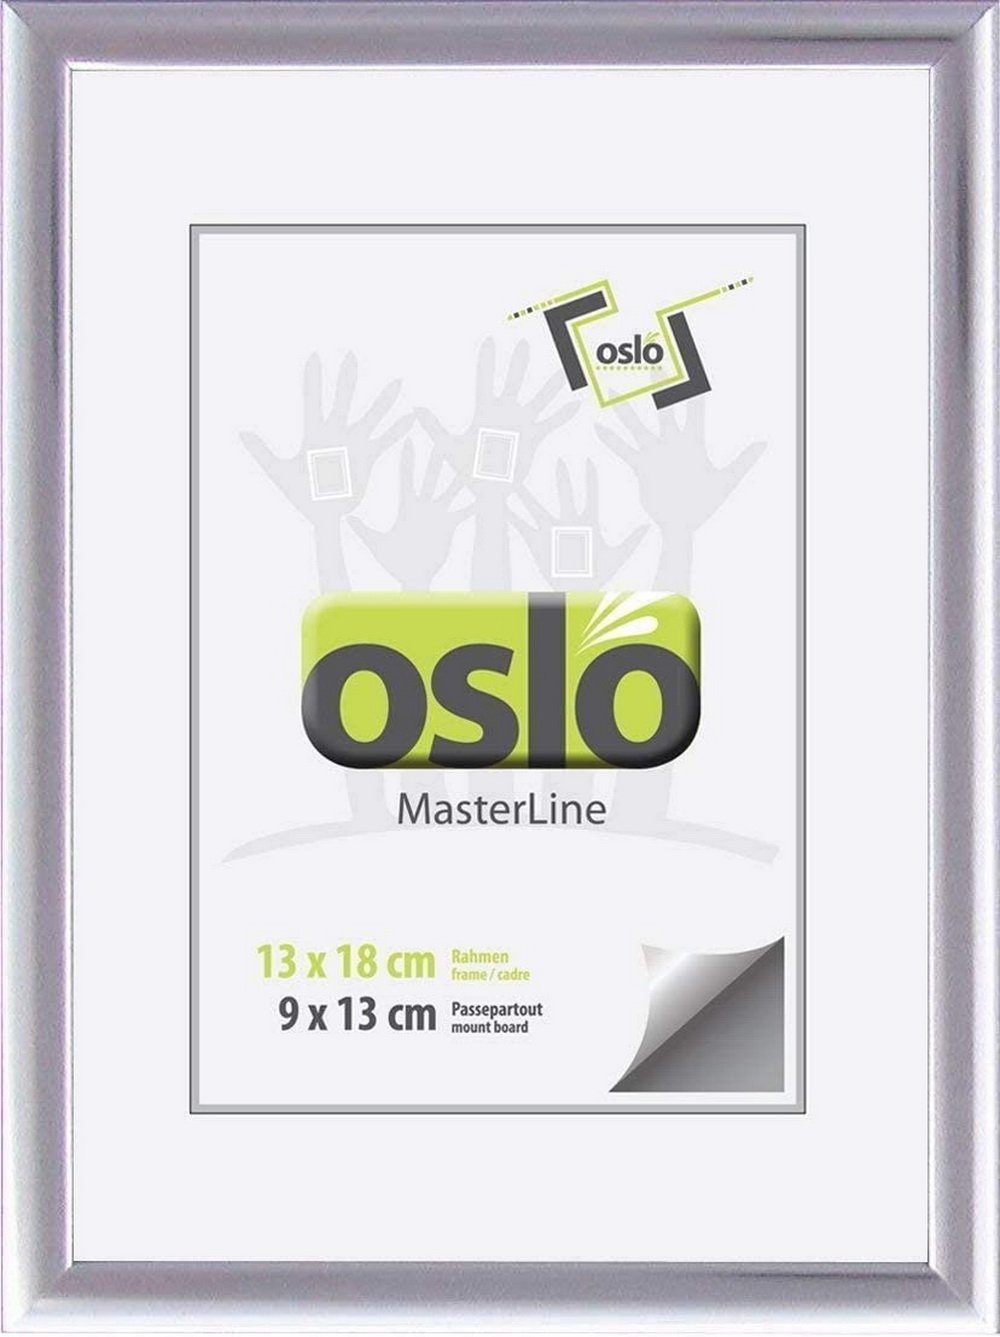 Oslo MasterLine Einzelrahmen Bilderrahmen schmal Aluminium massiv verschiedene Farben und Größen, 13x18 silber glänzend mit Aufstelller, Alu Portraitrahmen